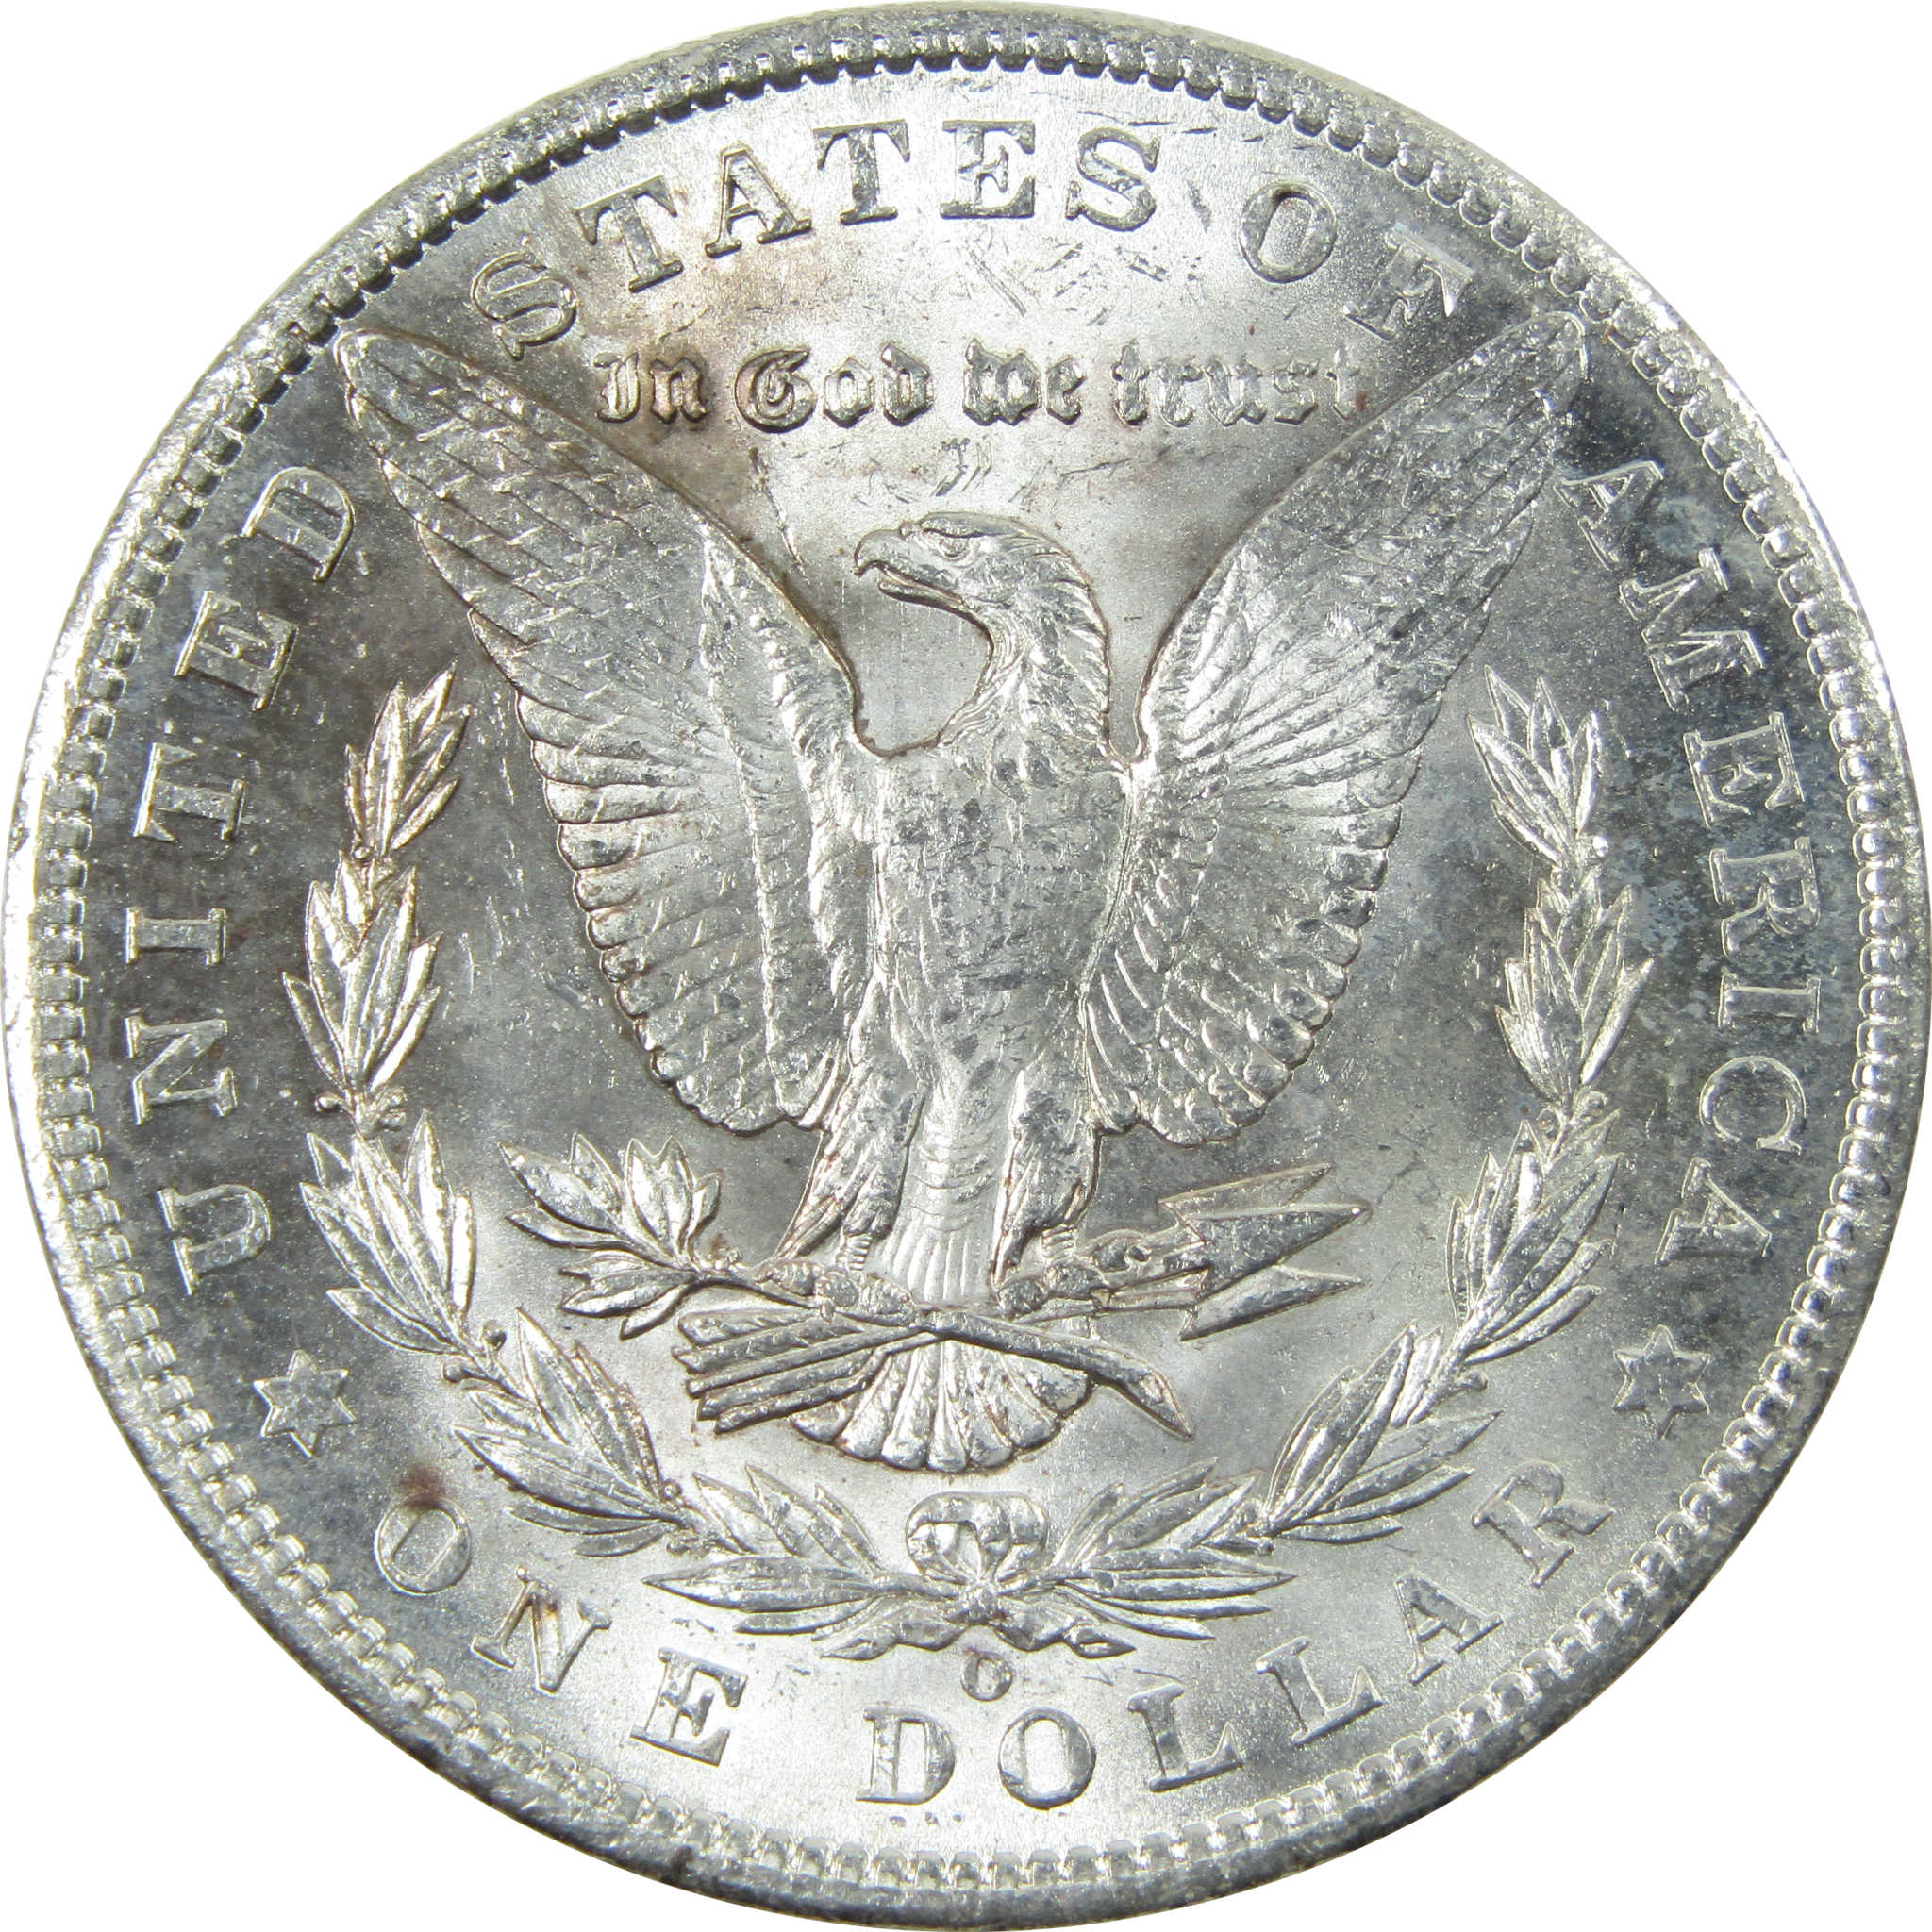 1902 O Morgan Dollar Uncirculated Silver $1 Coin SKU:I13937 - Morgan coin - Morgan silver dollar - Morgan silver dollar for sale - Profile Coins &amp; Collectibles